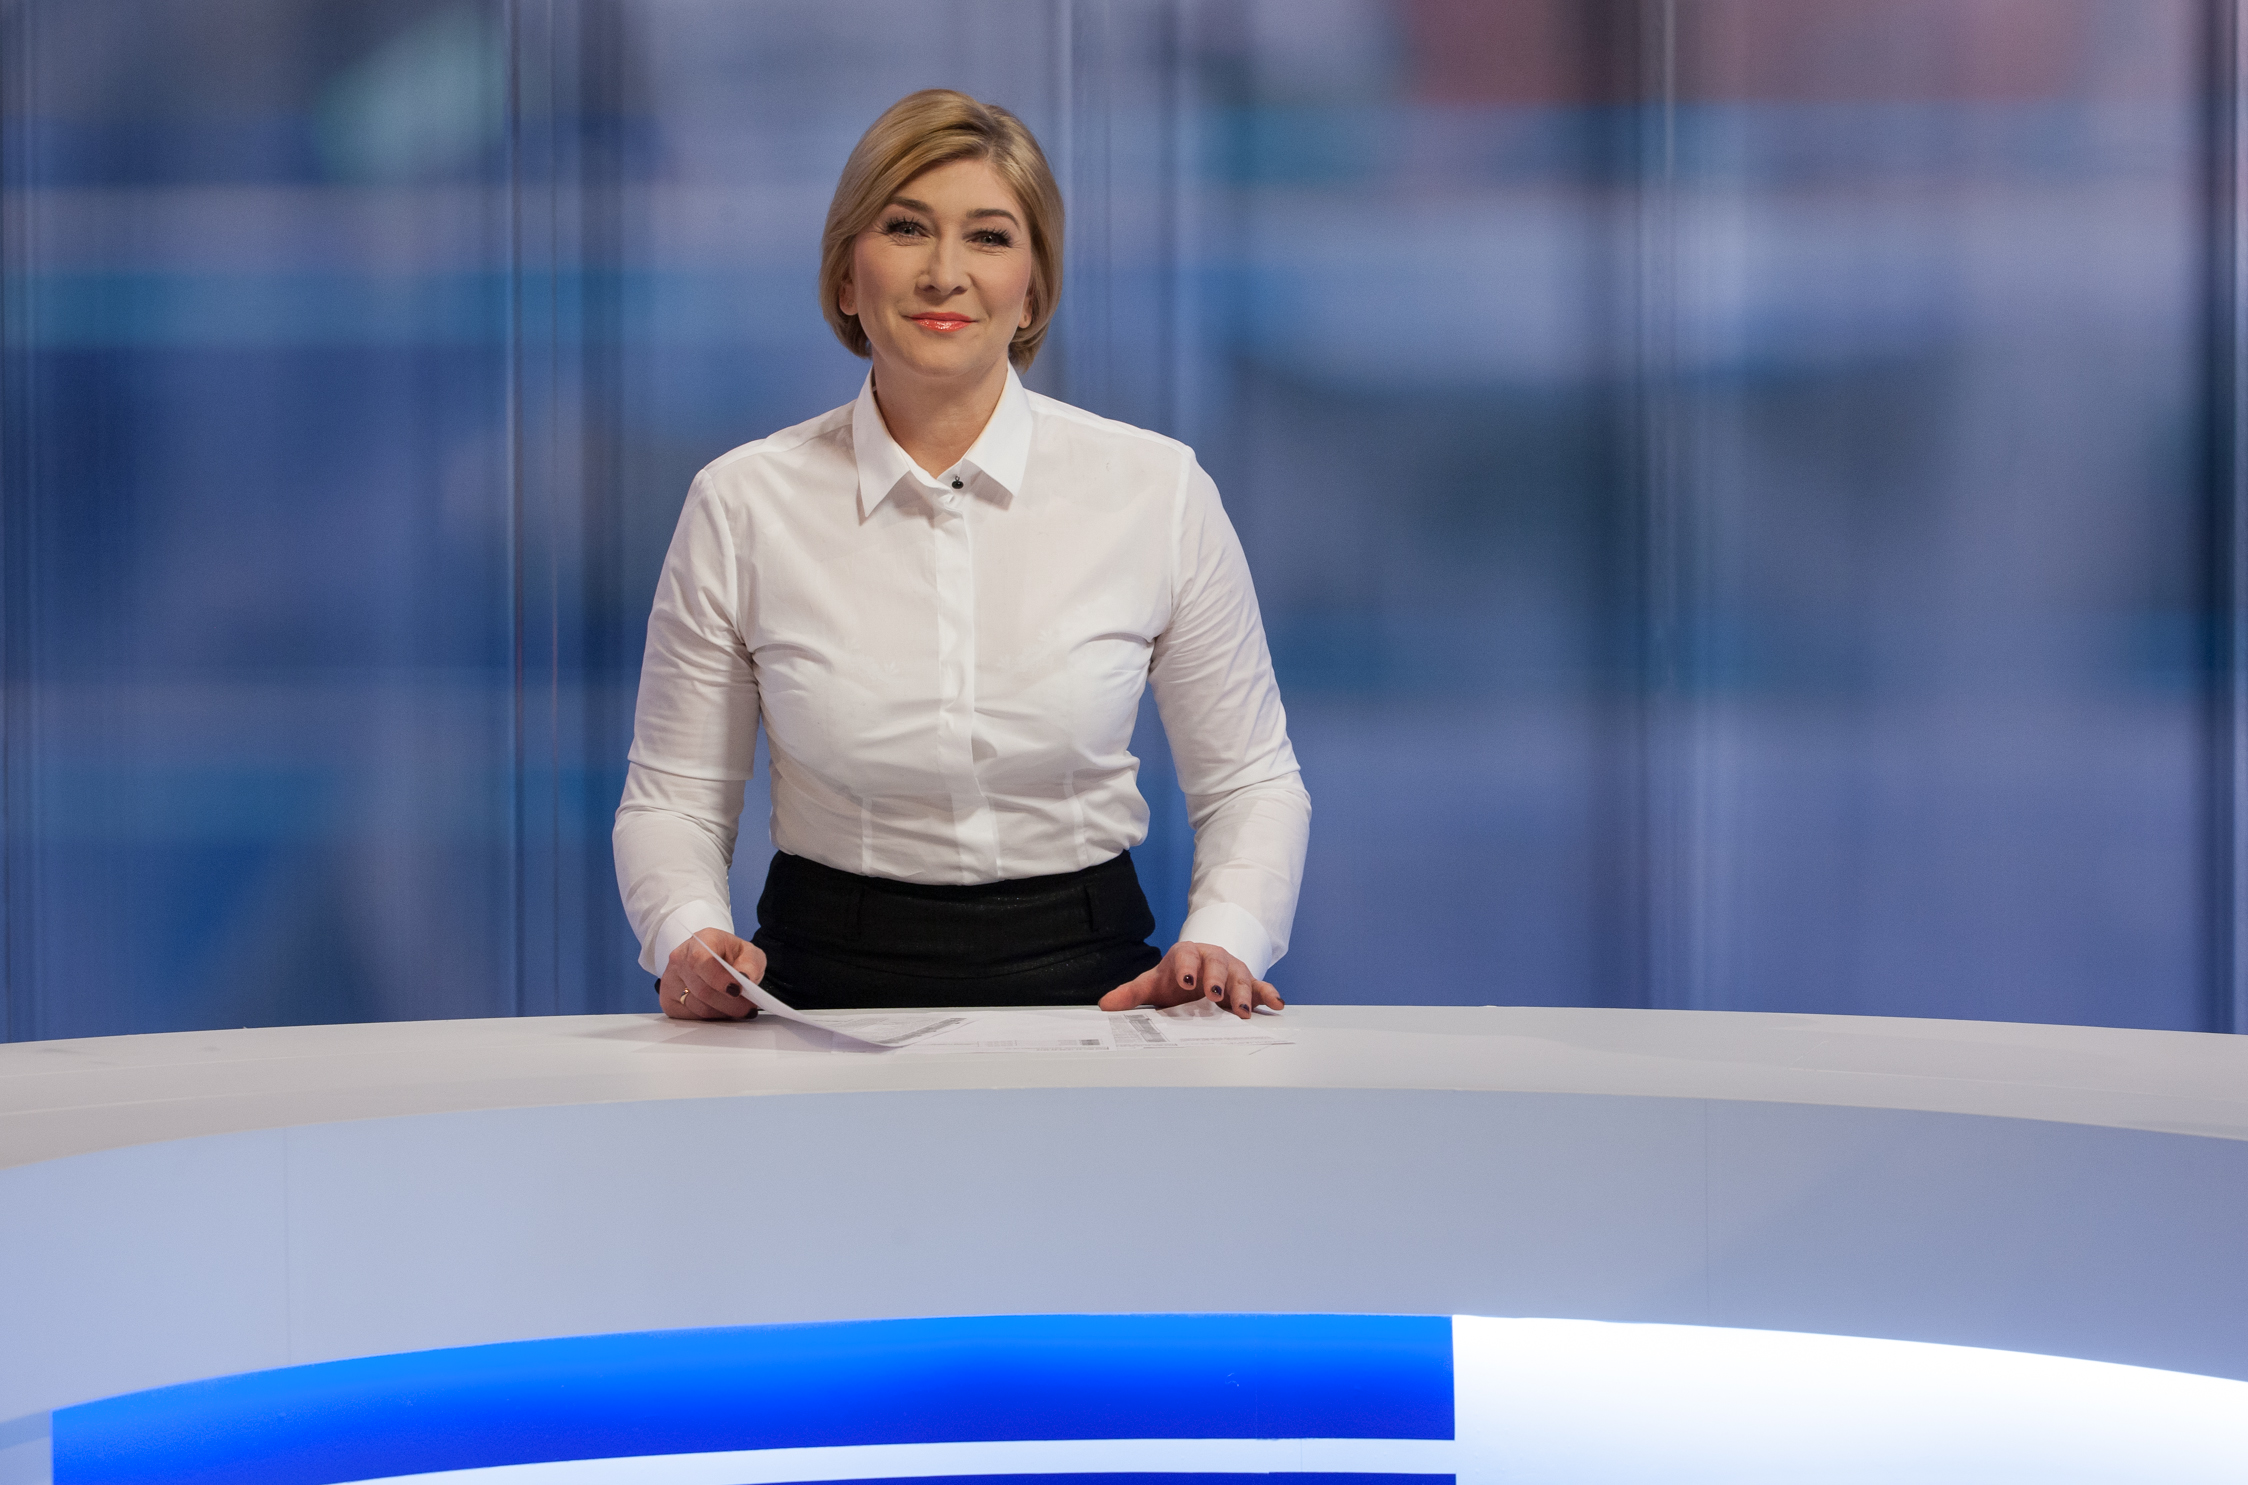 Ilona Małek szefowa Sekcji Programów Informacyjnych TVP3 Rzeszów i prezenterka